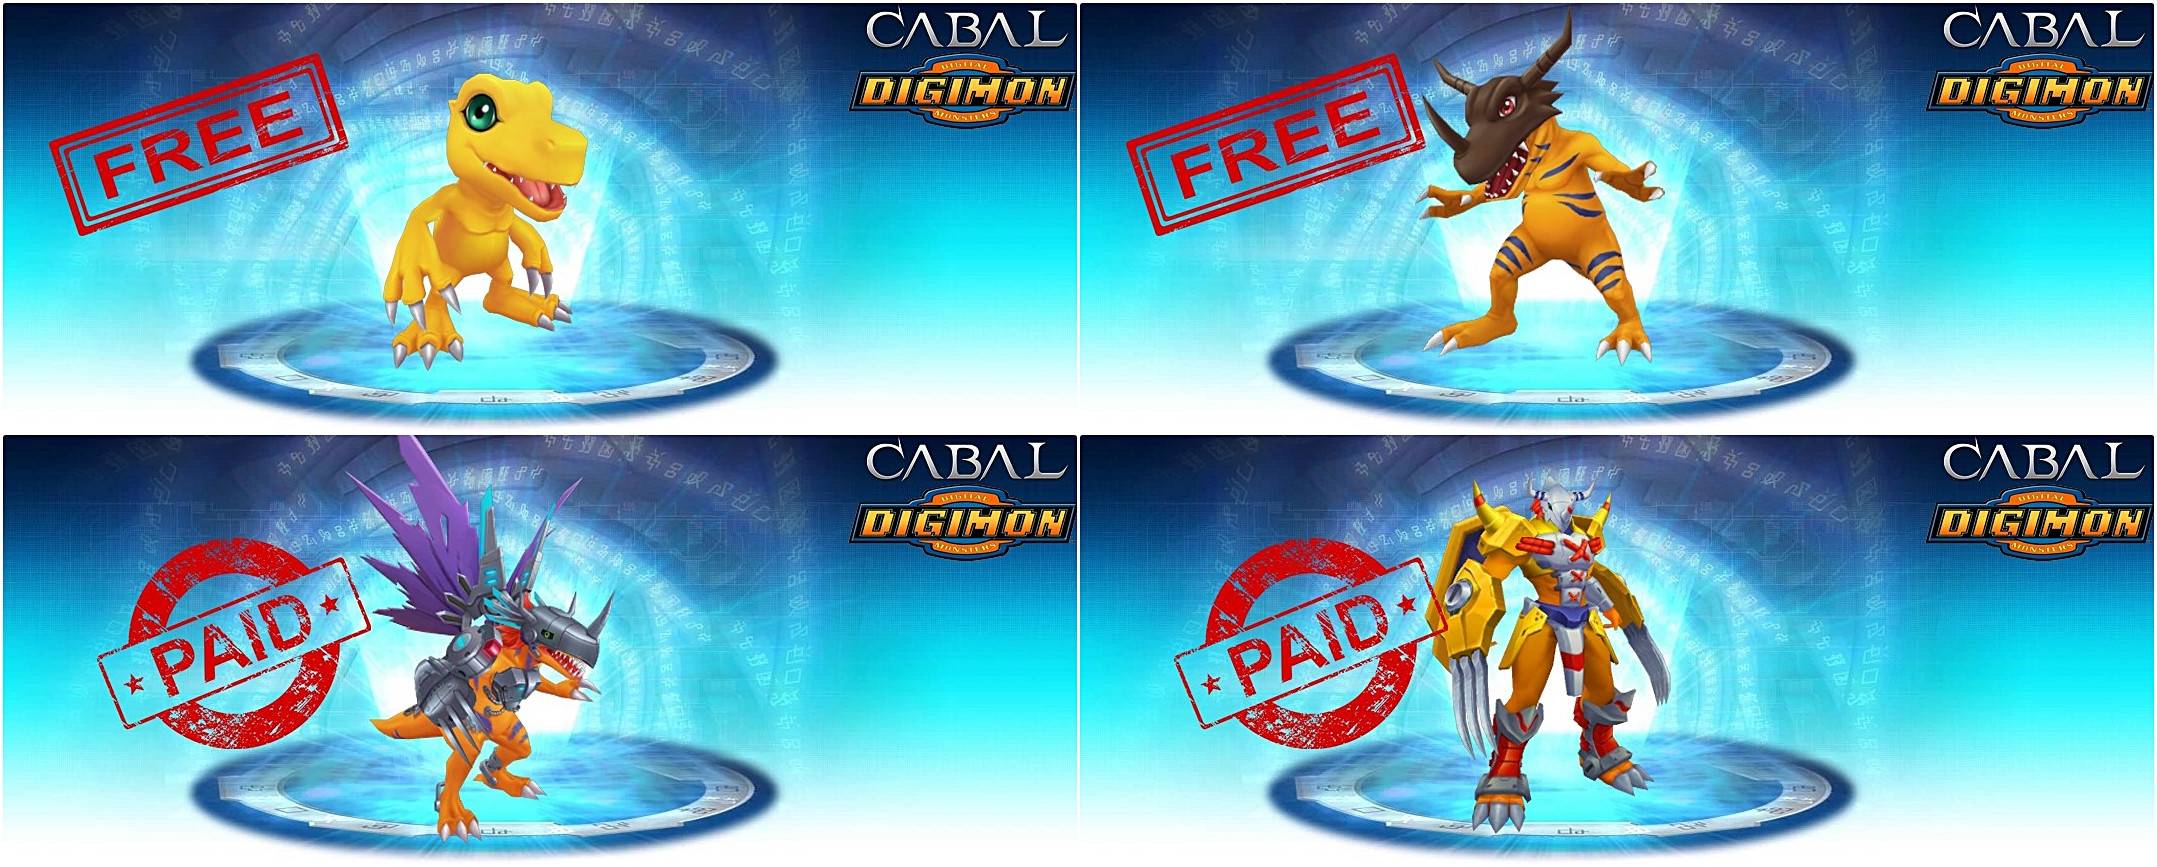 XR5ohGf - [ PET ] Digimon x Cabal - RaGEZONE Forums